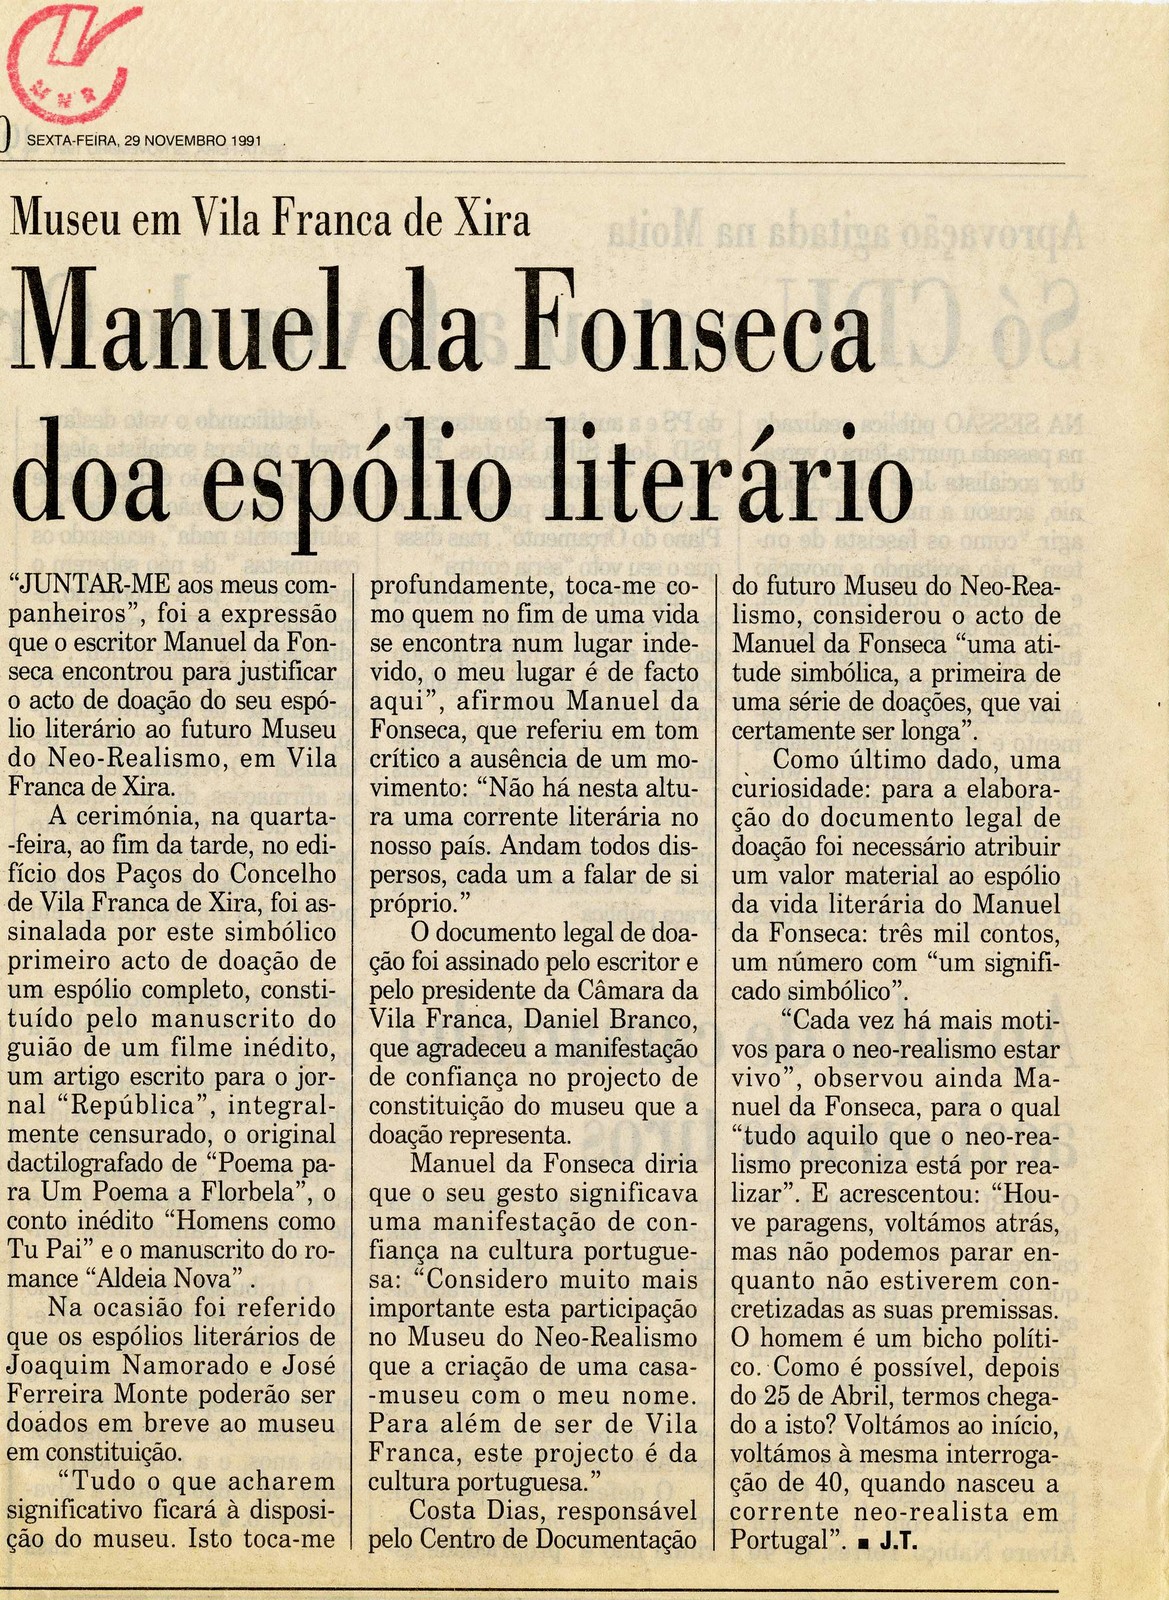 'Manuel da Fonseca doa espólio literário', por J. T. [Jorge Talixa] In 'Público', 29 novembro 199...